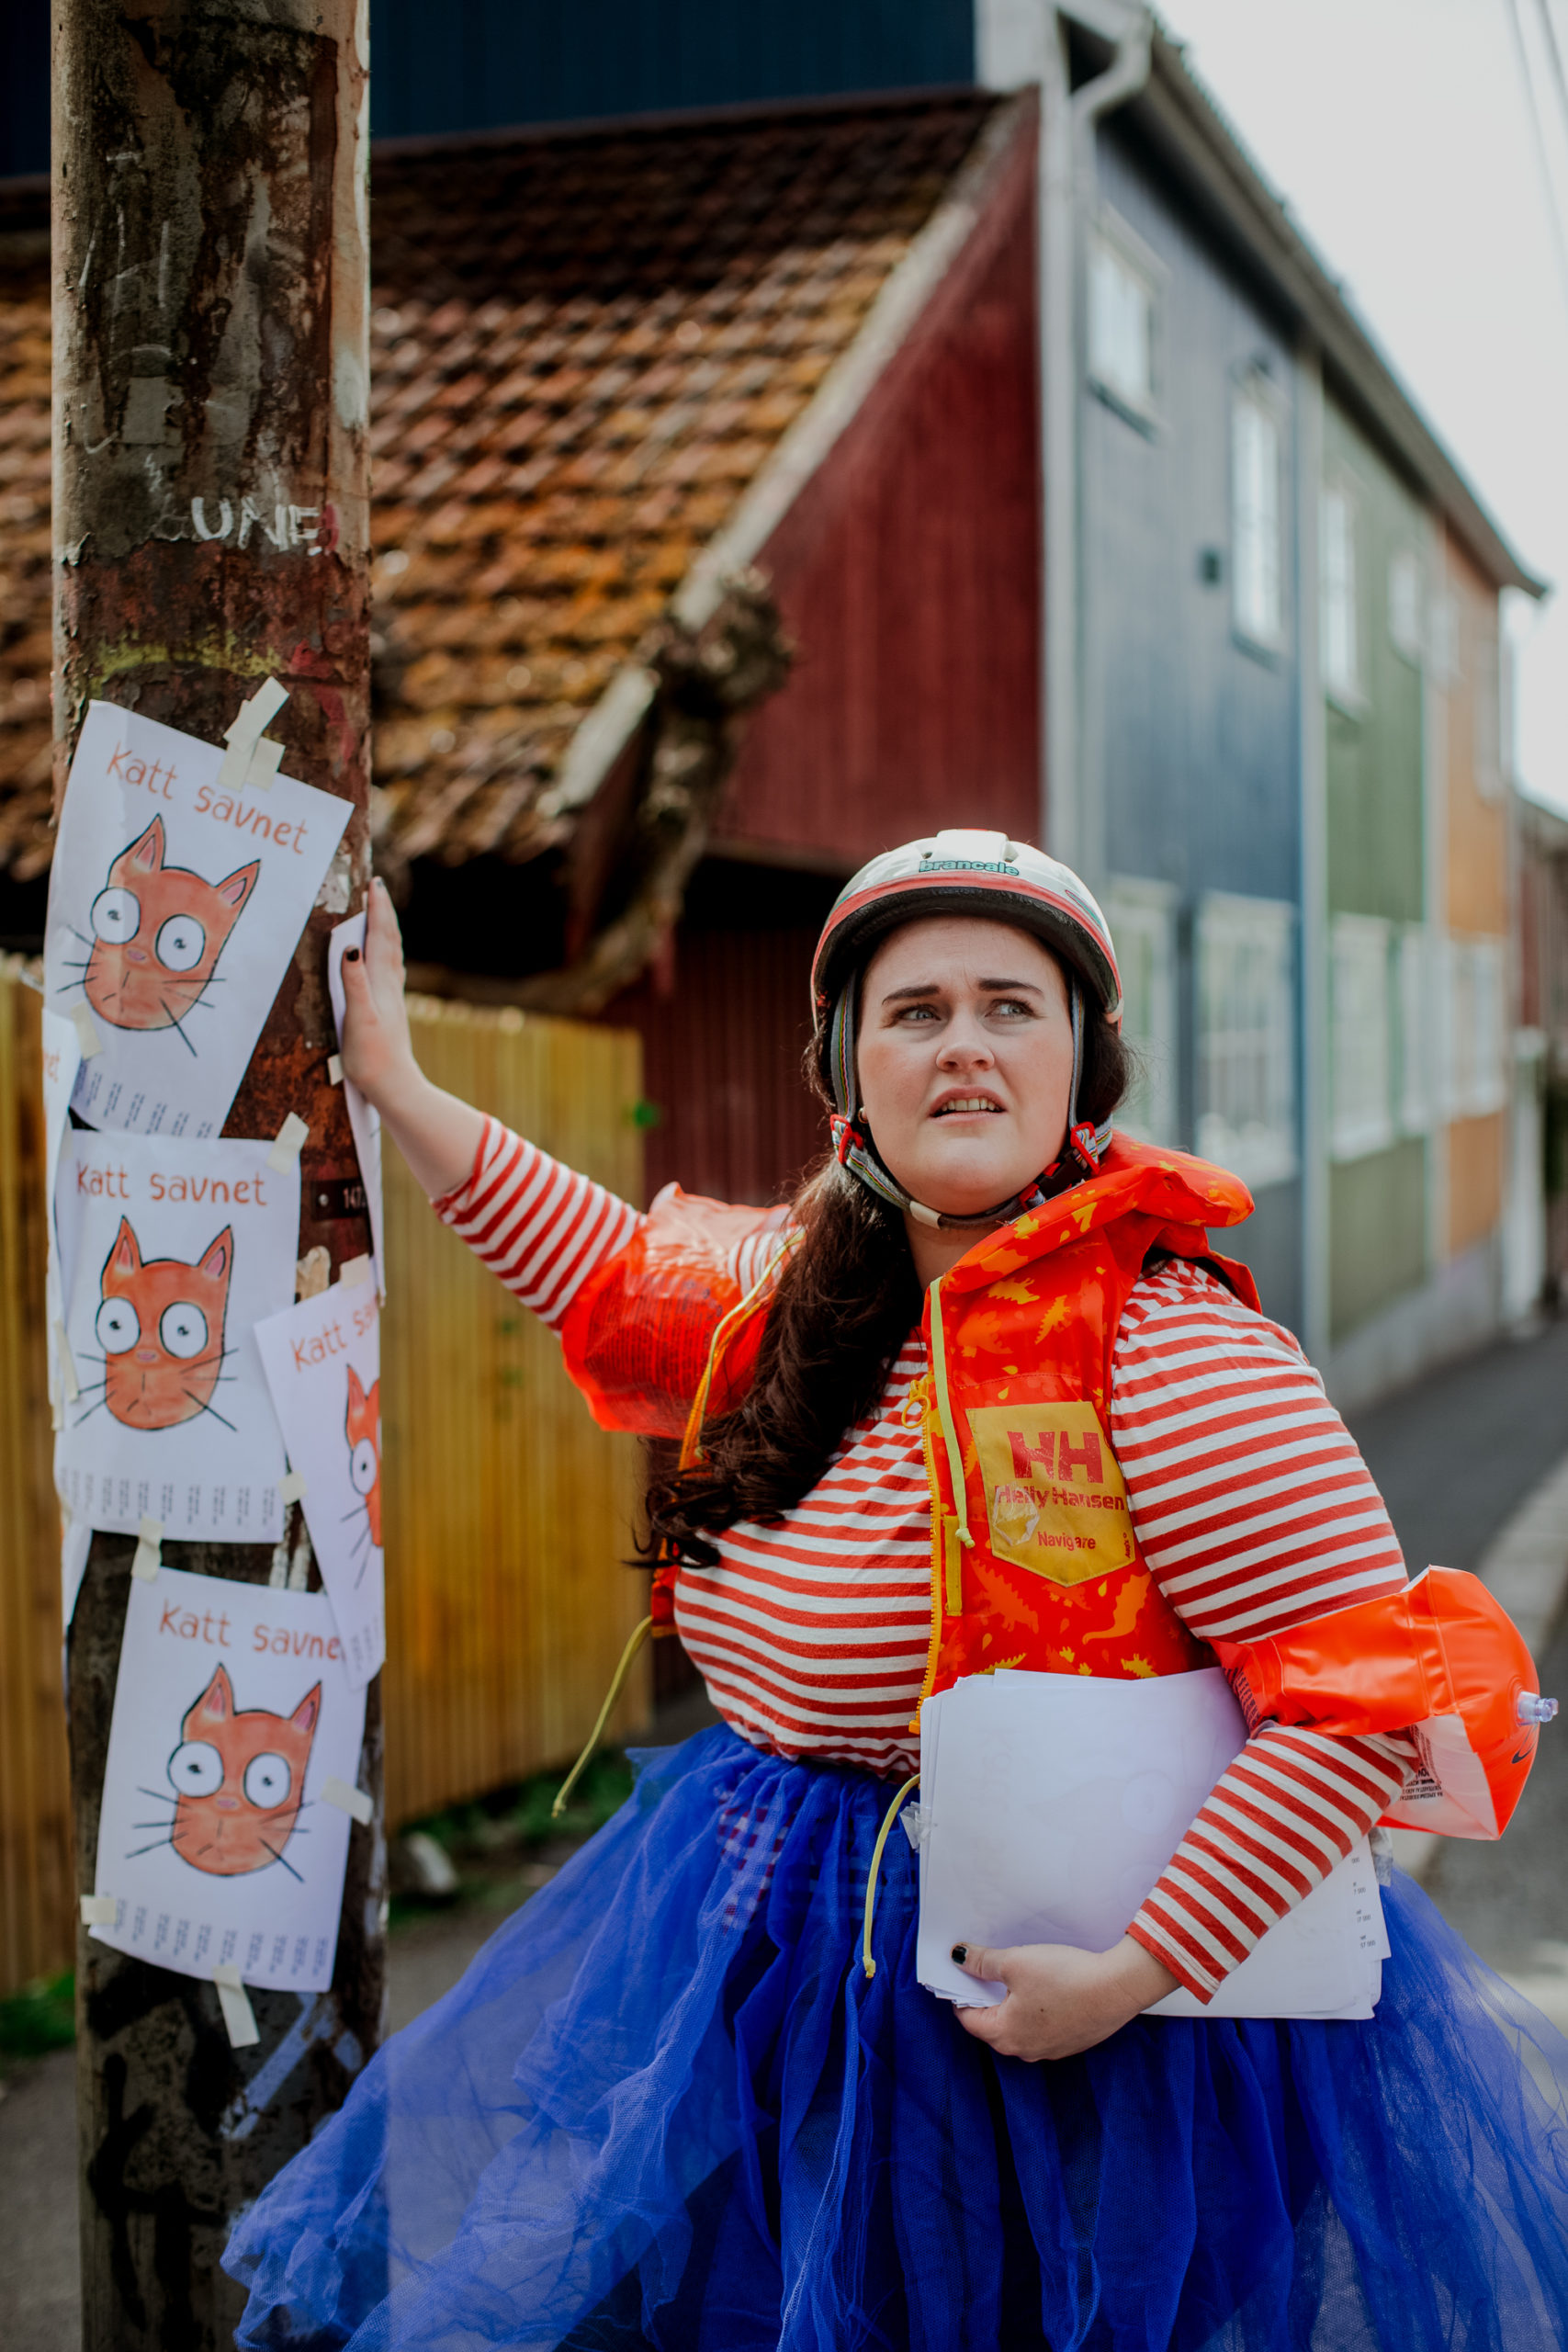 Fotografi: Bildet viser en ung, kvinnelig skuespiller som henger opp plakater av en savnet katt. Kvinnen har på seg oransje redningsvest, sykkelhjelm og oppblåsbare armringer.